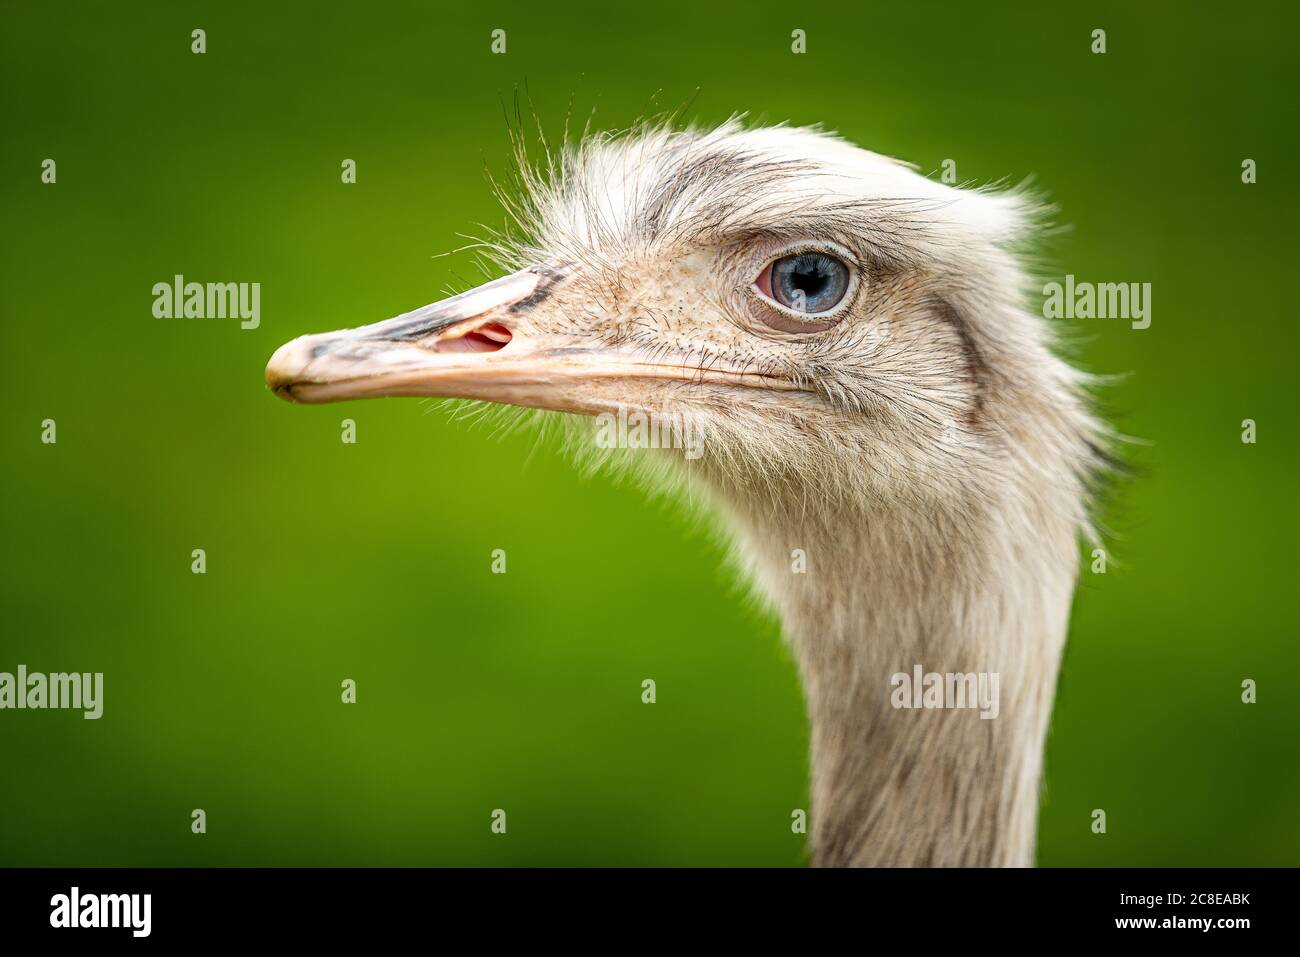 EMU cabeza pájaro sin vuelo con ojos azules y pico largo con plumas. Fotografiado en el parque agrícola Bridlington en la costa este de Inglaterra Gran Bretaña Foto de stock